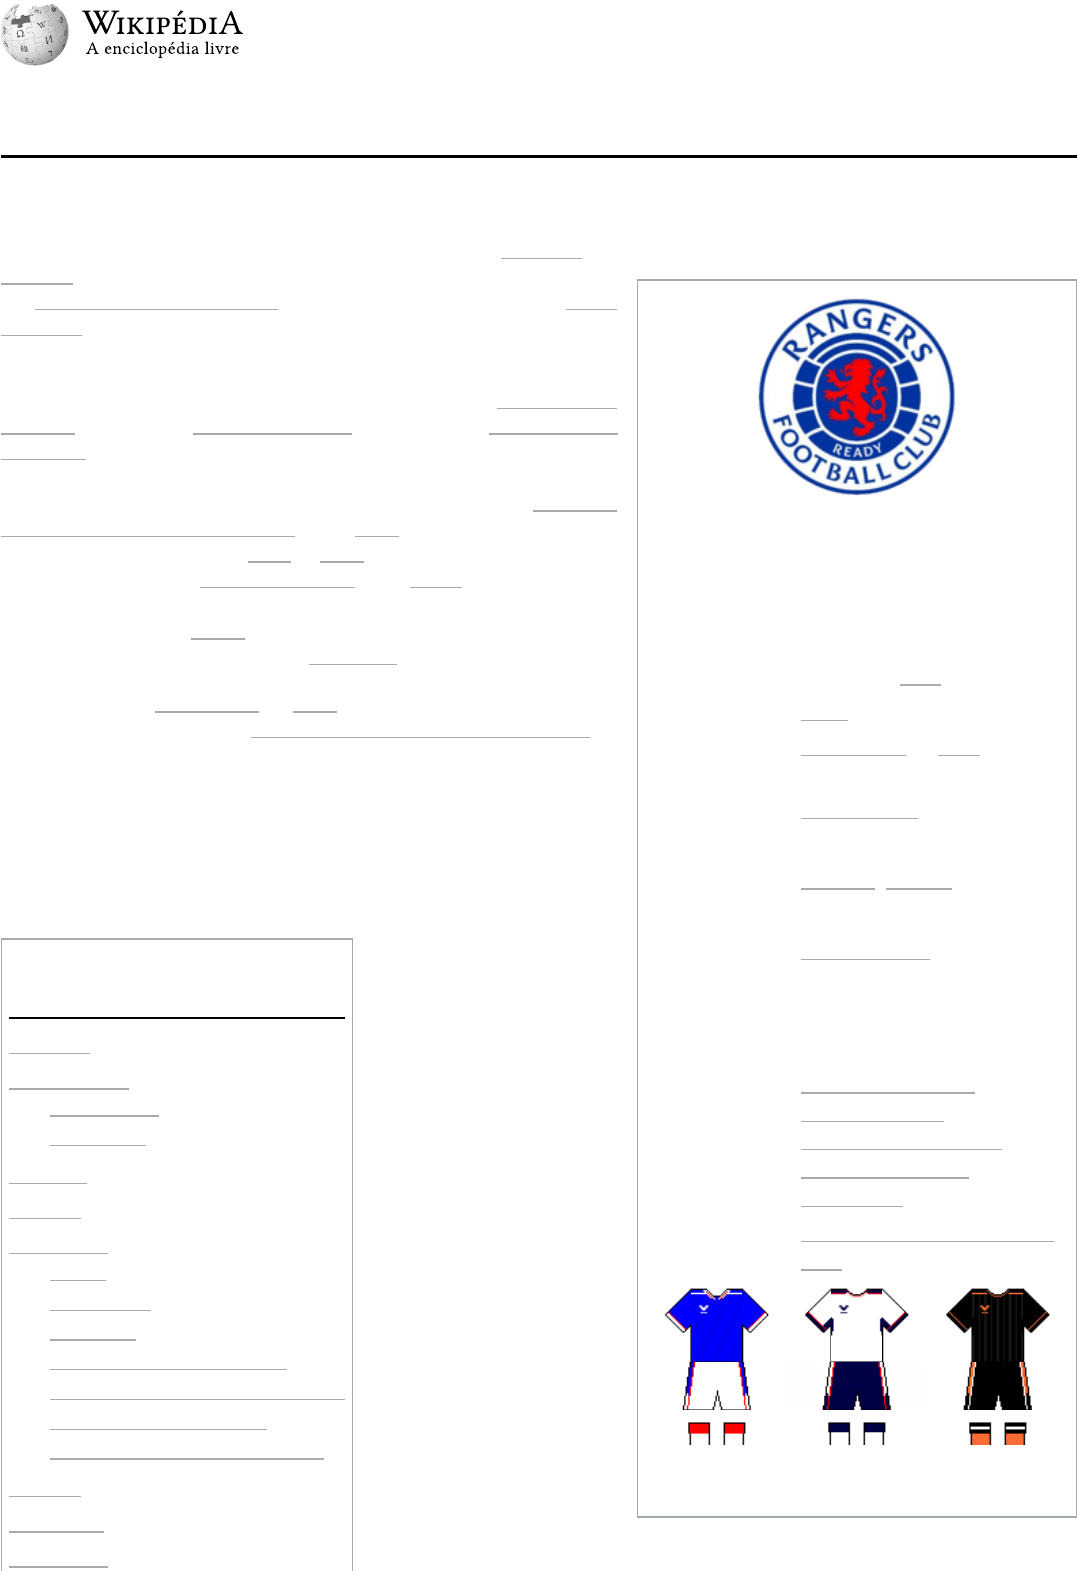 Liga dos Campeões da UEFA – Wikipédia, a enciclopédia livre